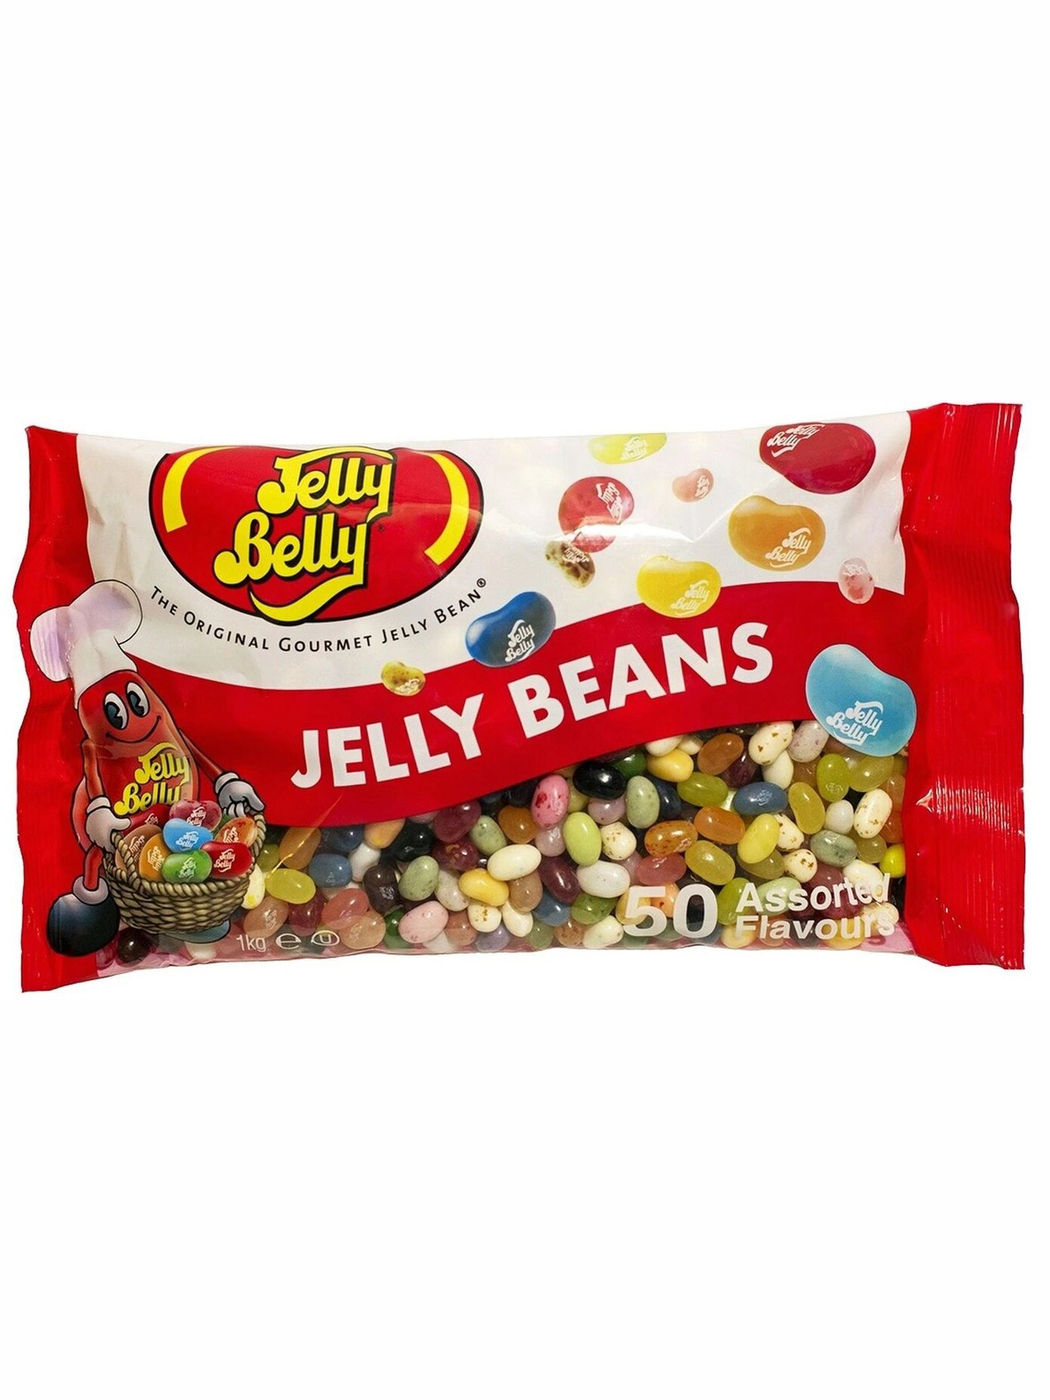 Вкусы jelly. Конфеты Джелли Белли 50 вкусов. Драже жевательное Jelly belly ассорти 50 вкусов, 100 г. Набор Джелли Белли 50 вкусов. Jelly belly ассорти 50 вкусов.